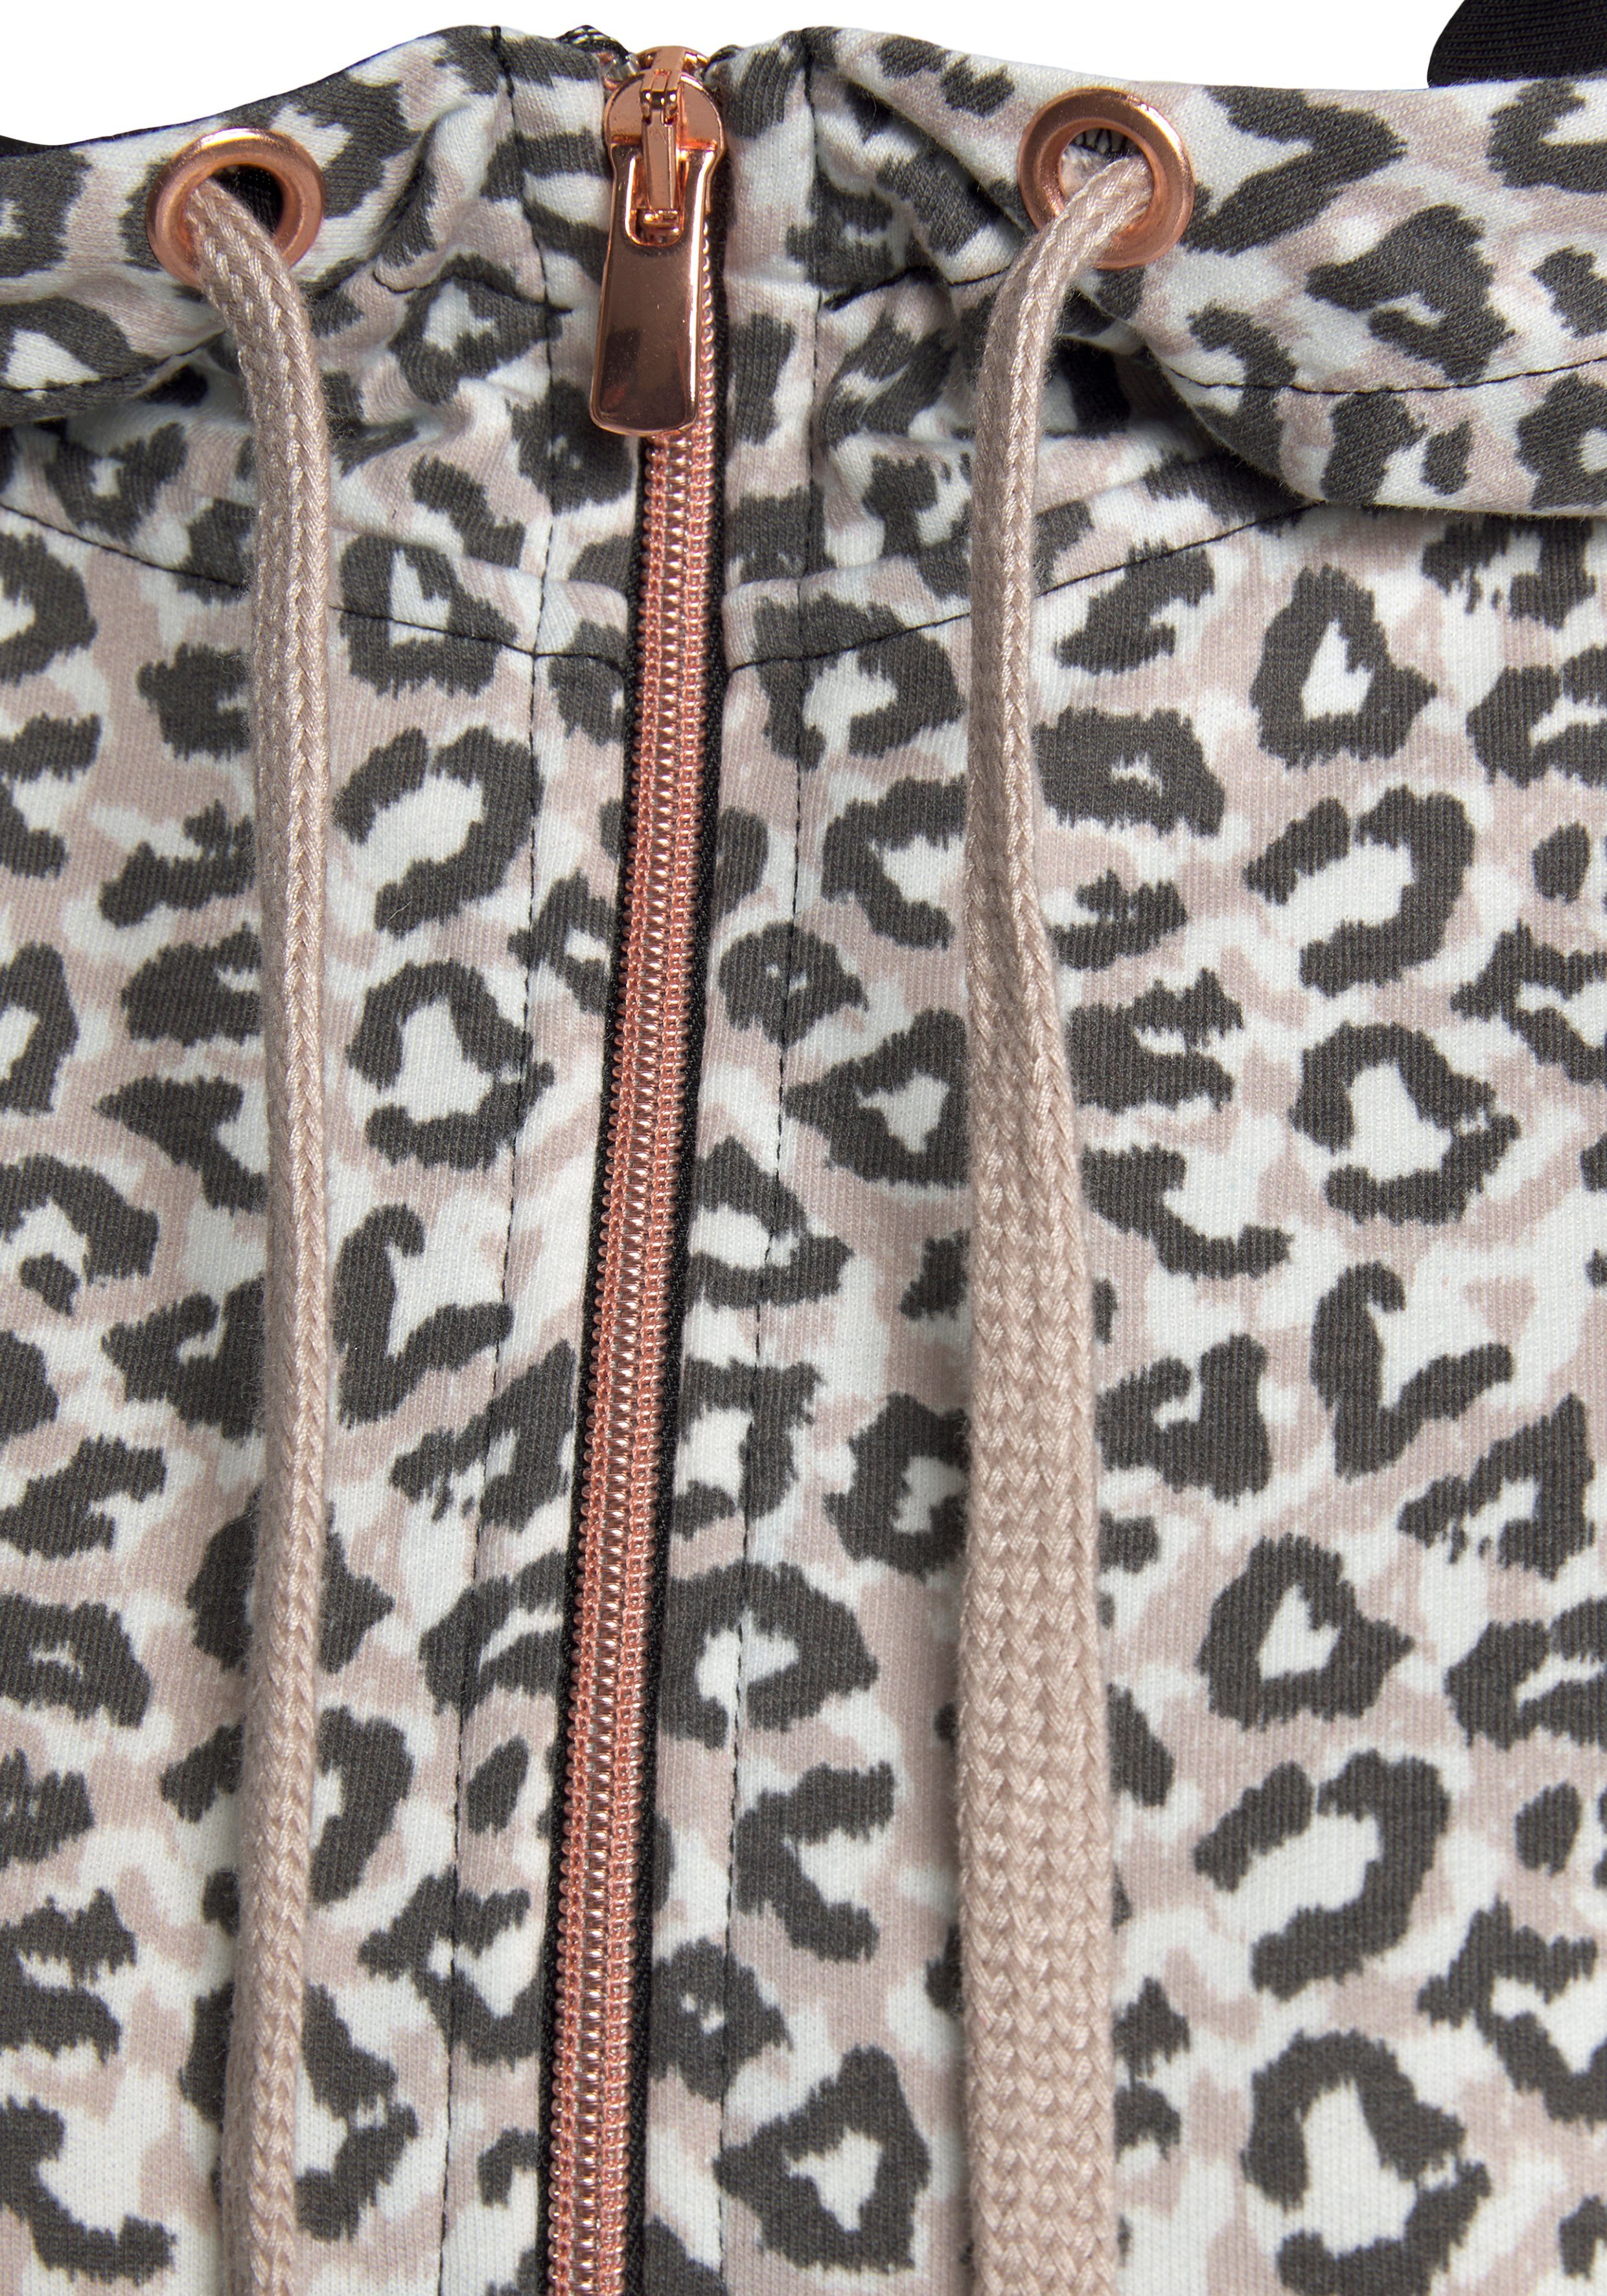 / seitlichen beige-schwarz Kapuzensweatjacke mit Loungeanzug und Taschen, Details LASCANA in Roségold Sweatshirtjacke